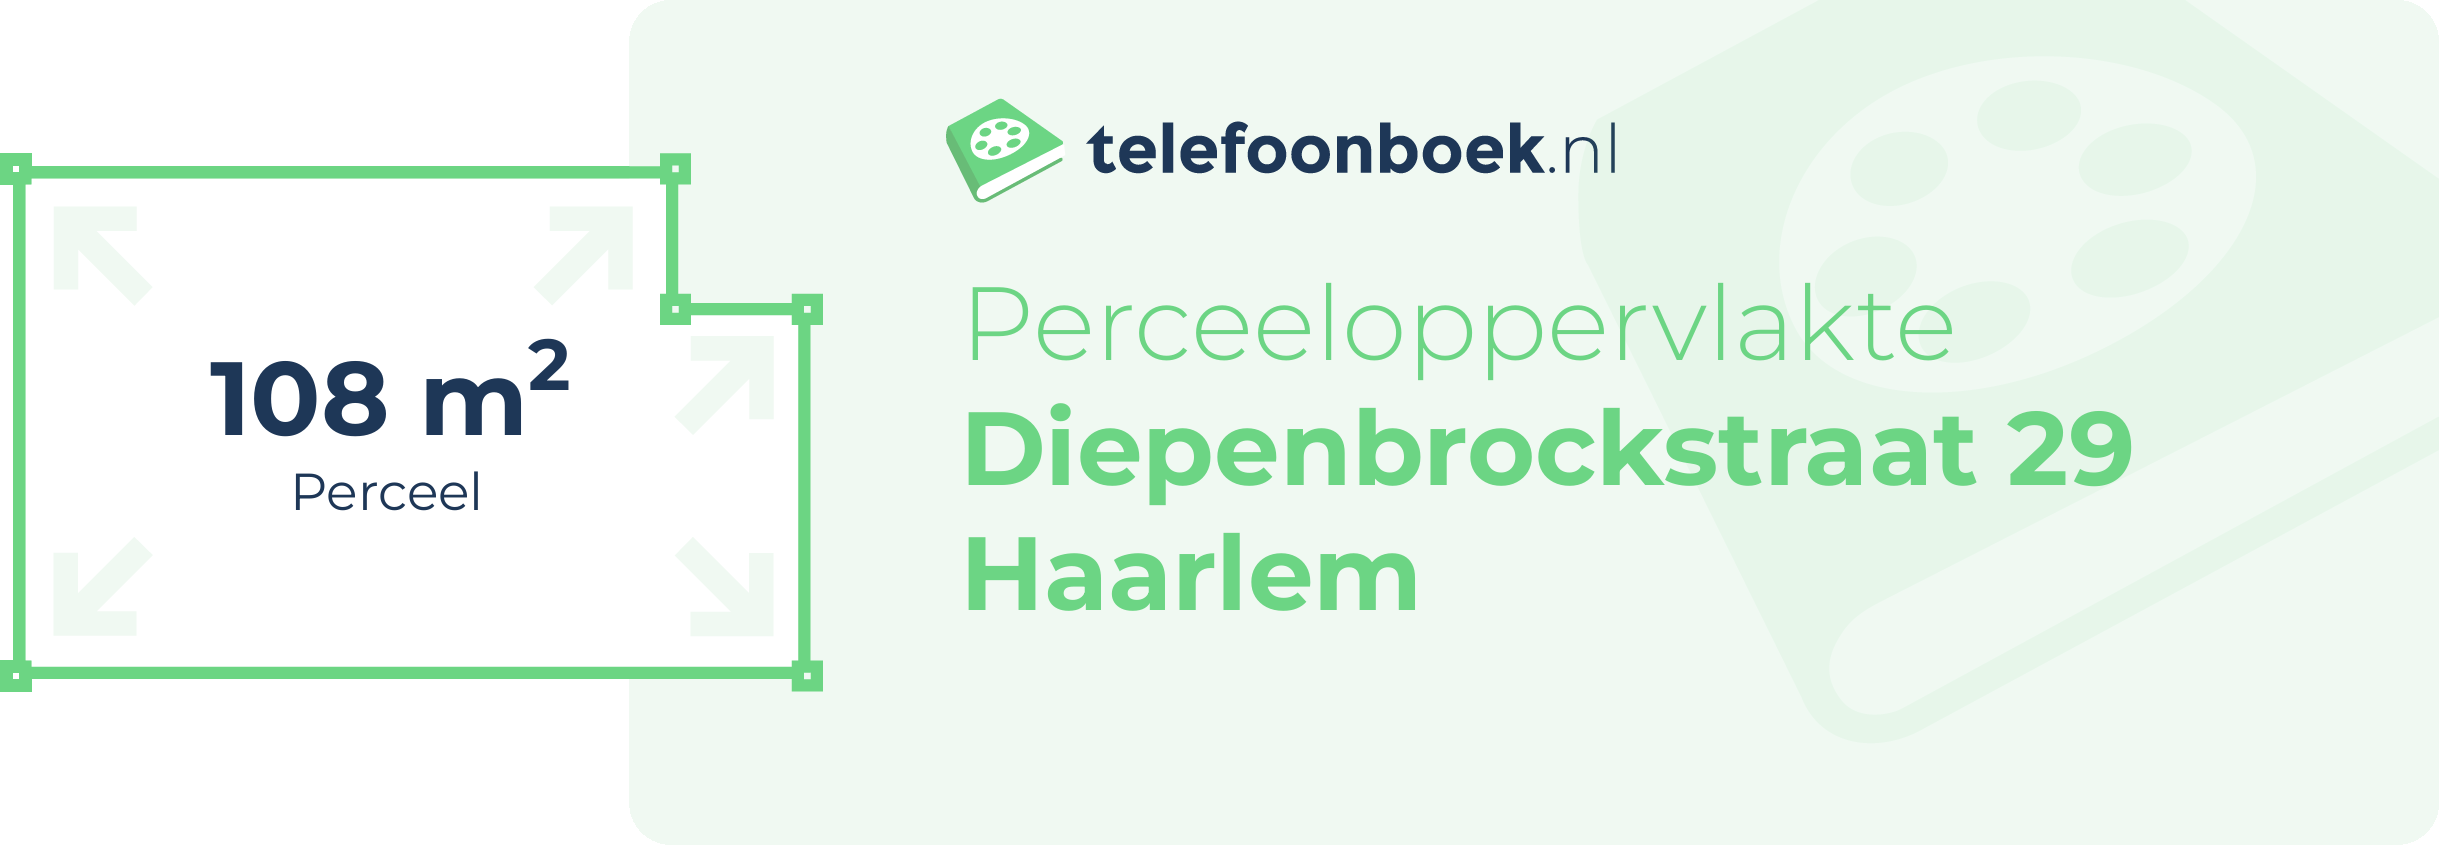 Perceeloppervlakte Diepenbrockstraat 29 Haarlem